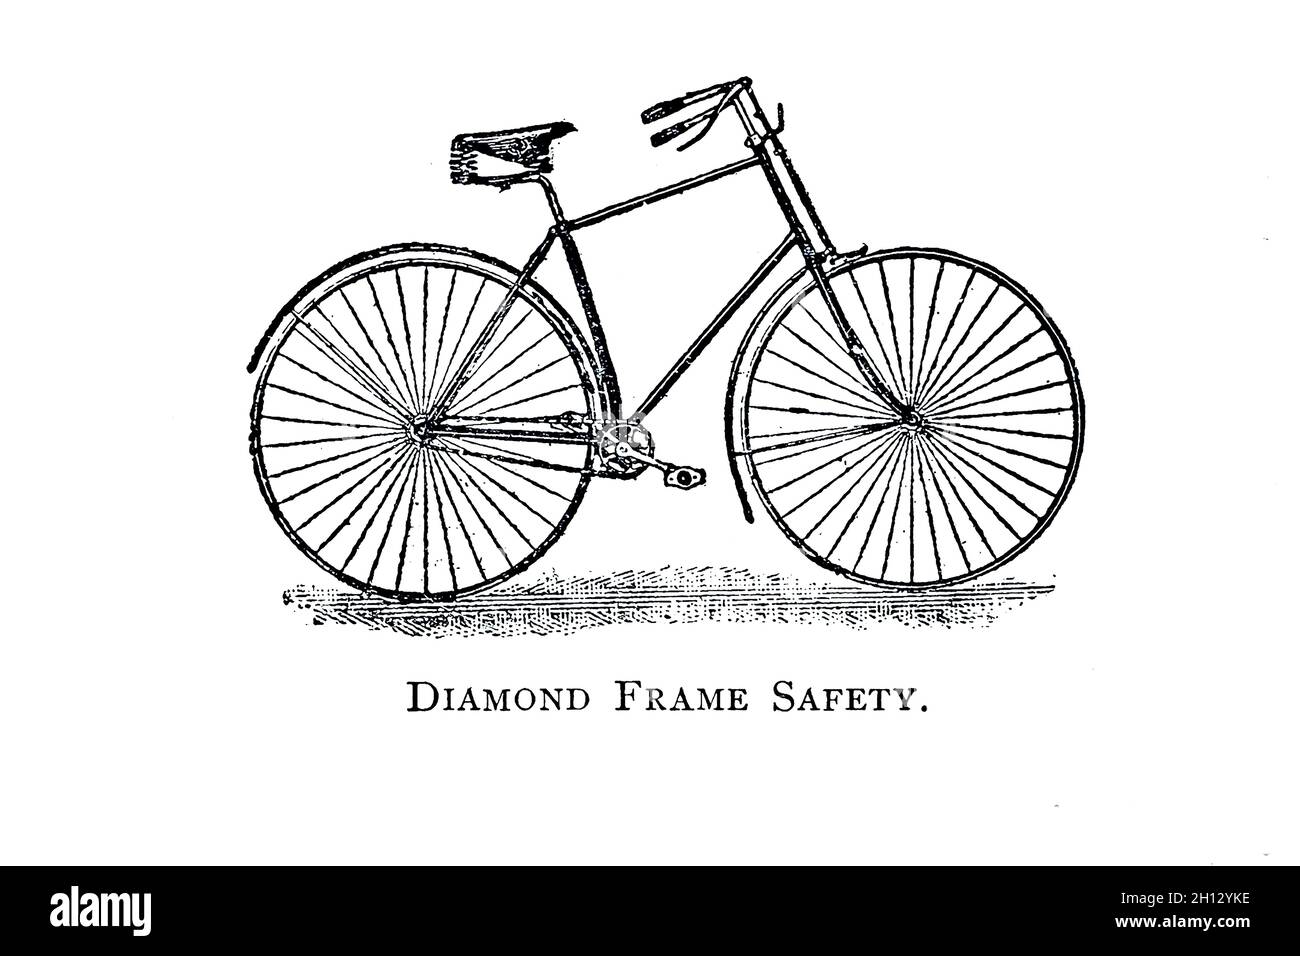 Vélo de sécurité à cadre en diamant, illustration du XIXe siècle Photo  Stock - Alamy